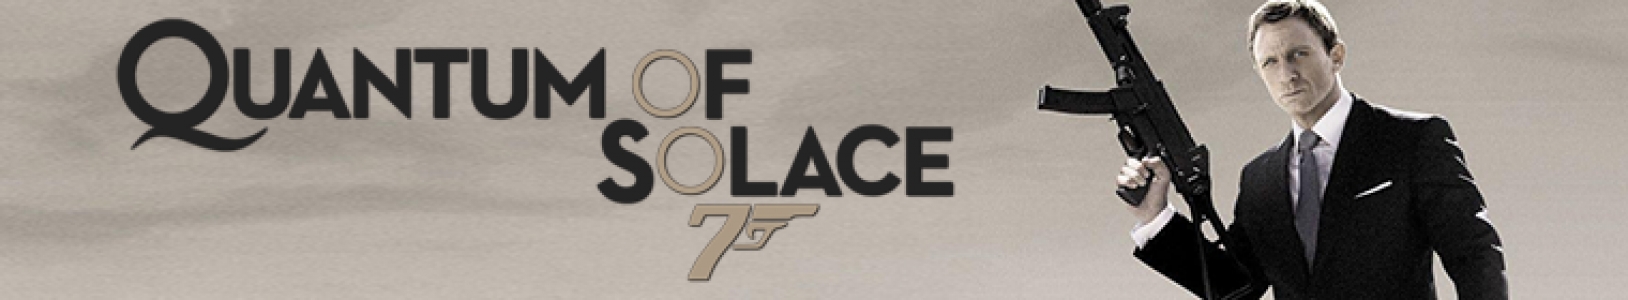 007: Quantum of Solace banner